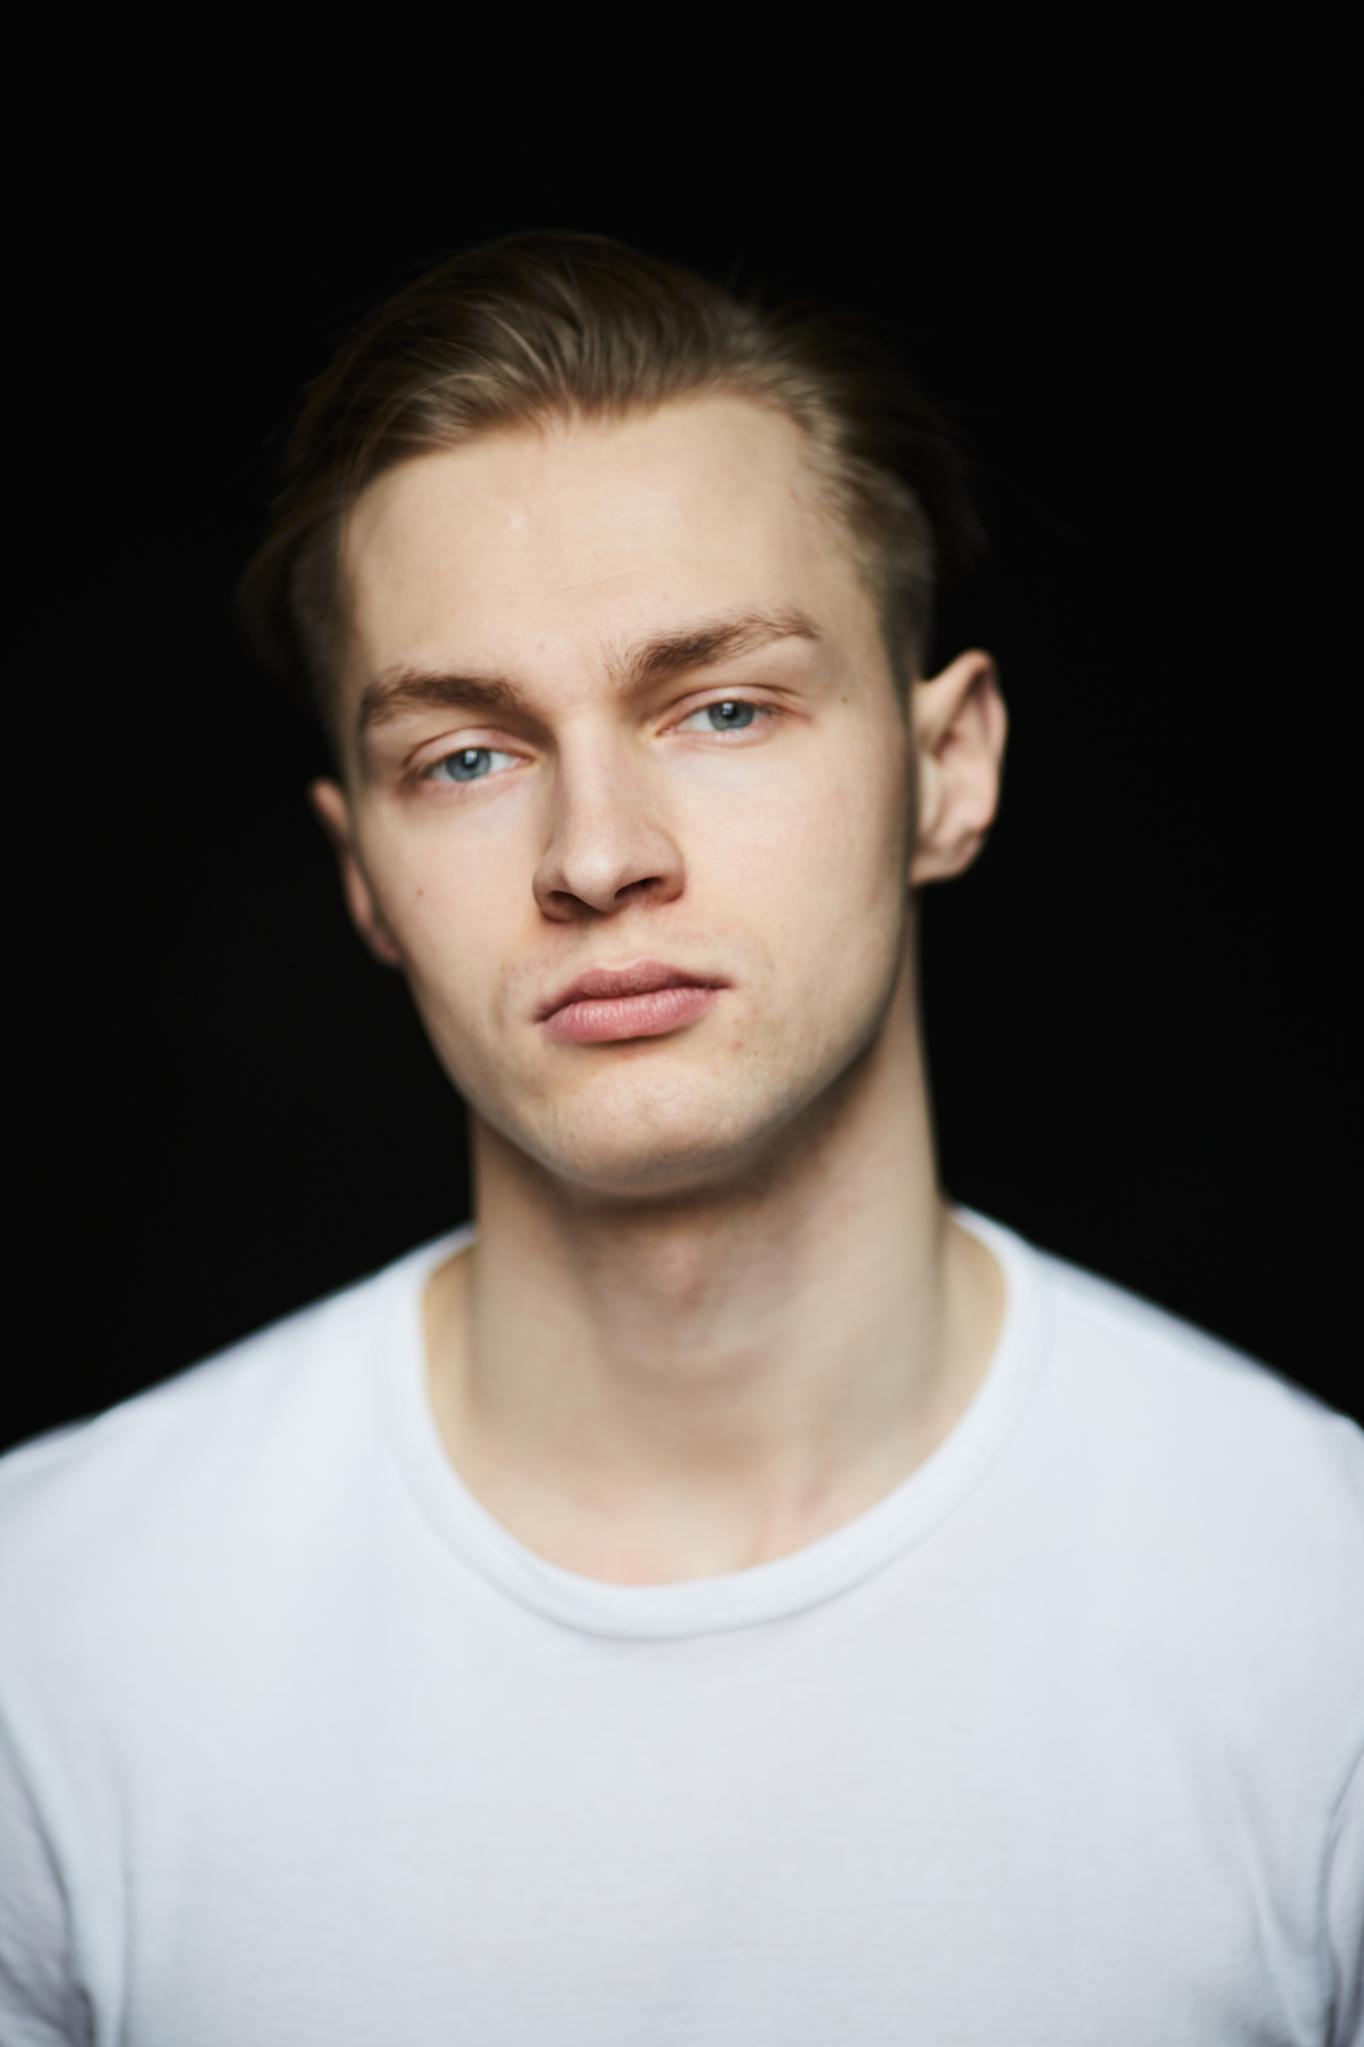 Андрей Лаптев, 25, Москва. Актер театра и кино. Официальный сайт | Kinolift